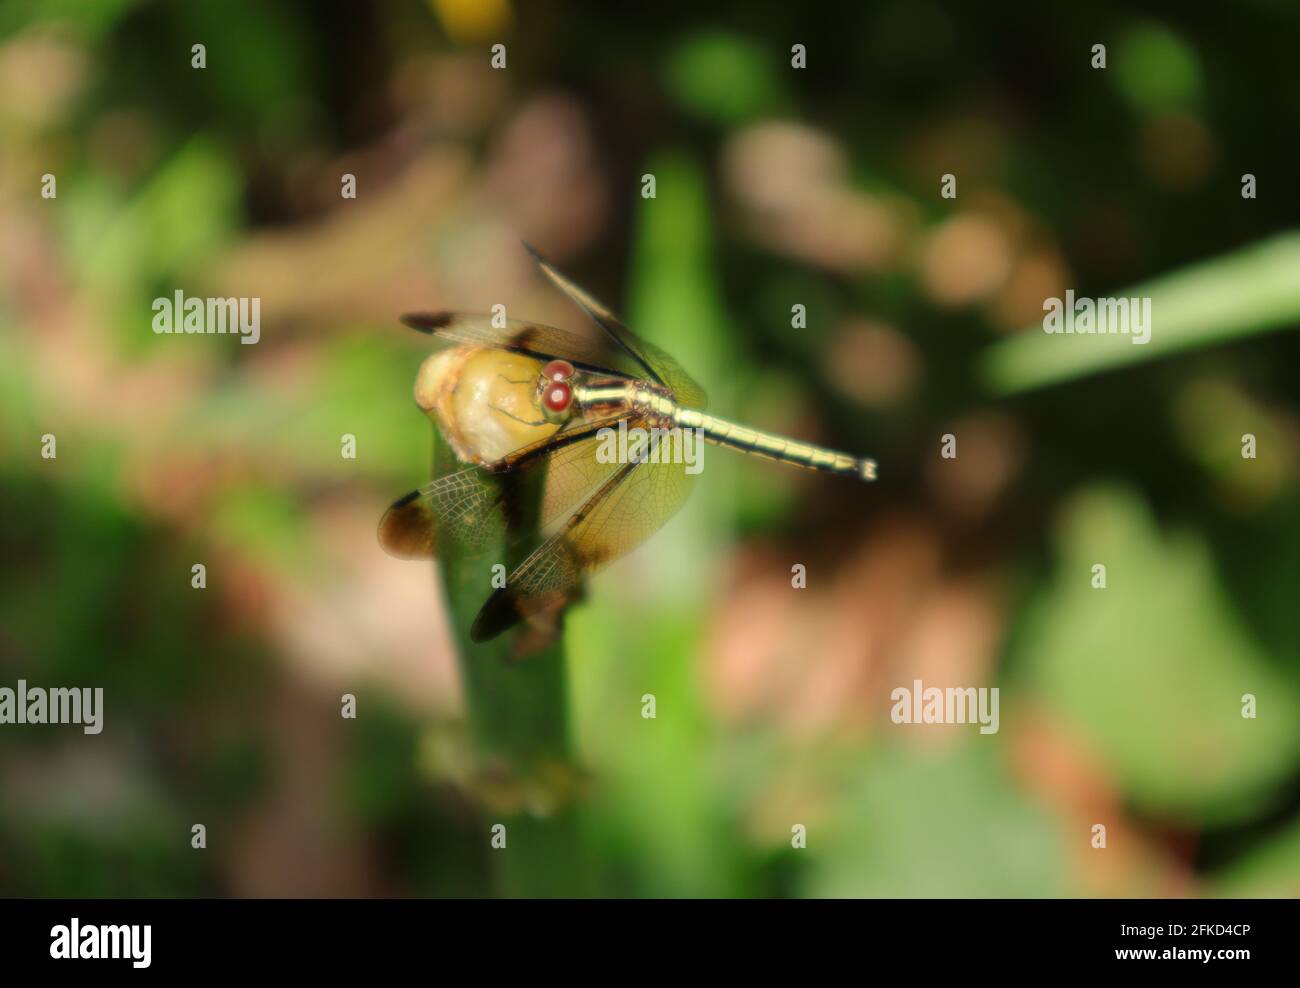 Vista dall'alto di una libellula skimmer color giallo dorato arroccata sulla parte superiore di una bacchetta verde Foto Stock